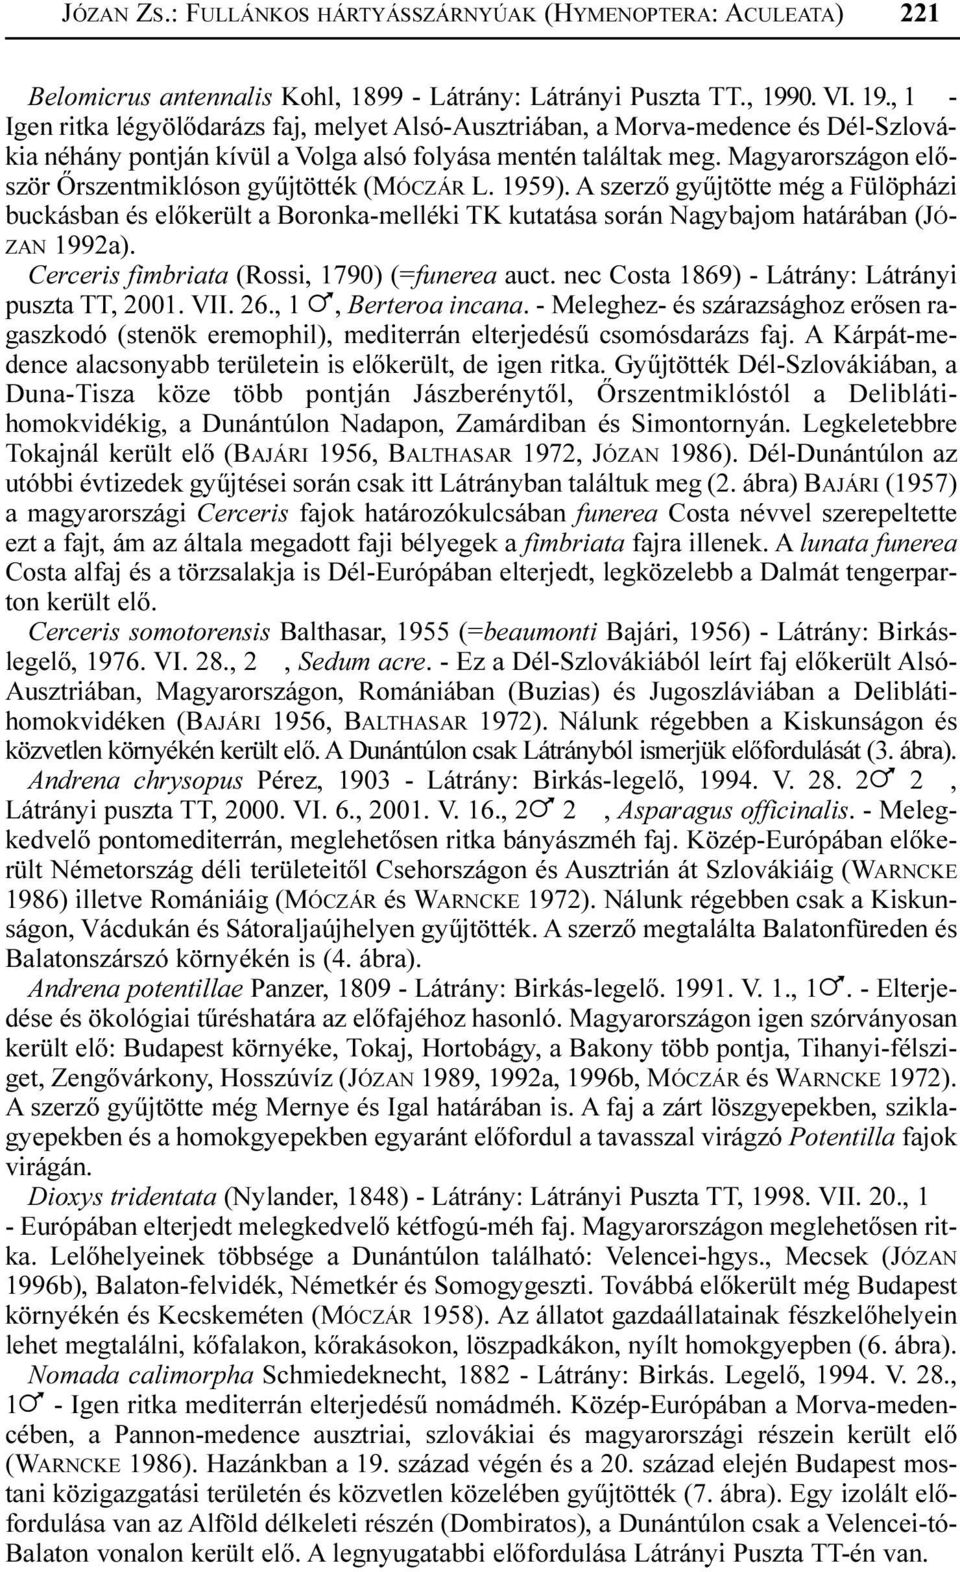 Magyarországon elõször Õrszentmiklóson gyûjtötték (MÓCZÁR L. 1959). A szerzõ gyûjtötte még a Fülöpházi buckásban és elõkerült a Boronka-melléki TK kutatása során Nagybajom határában (JÓ- ZAN 1992a).